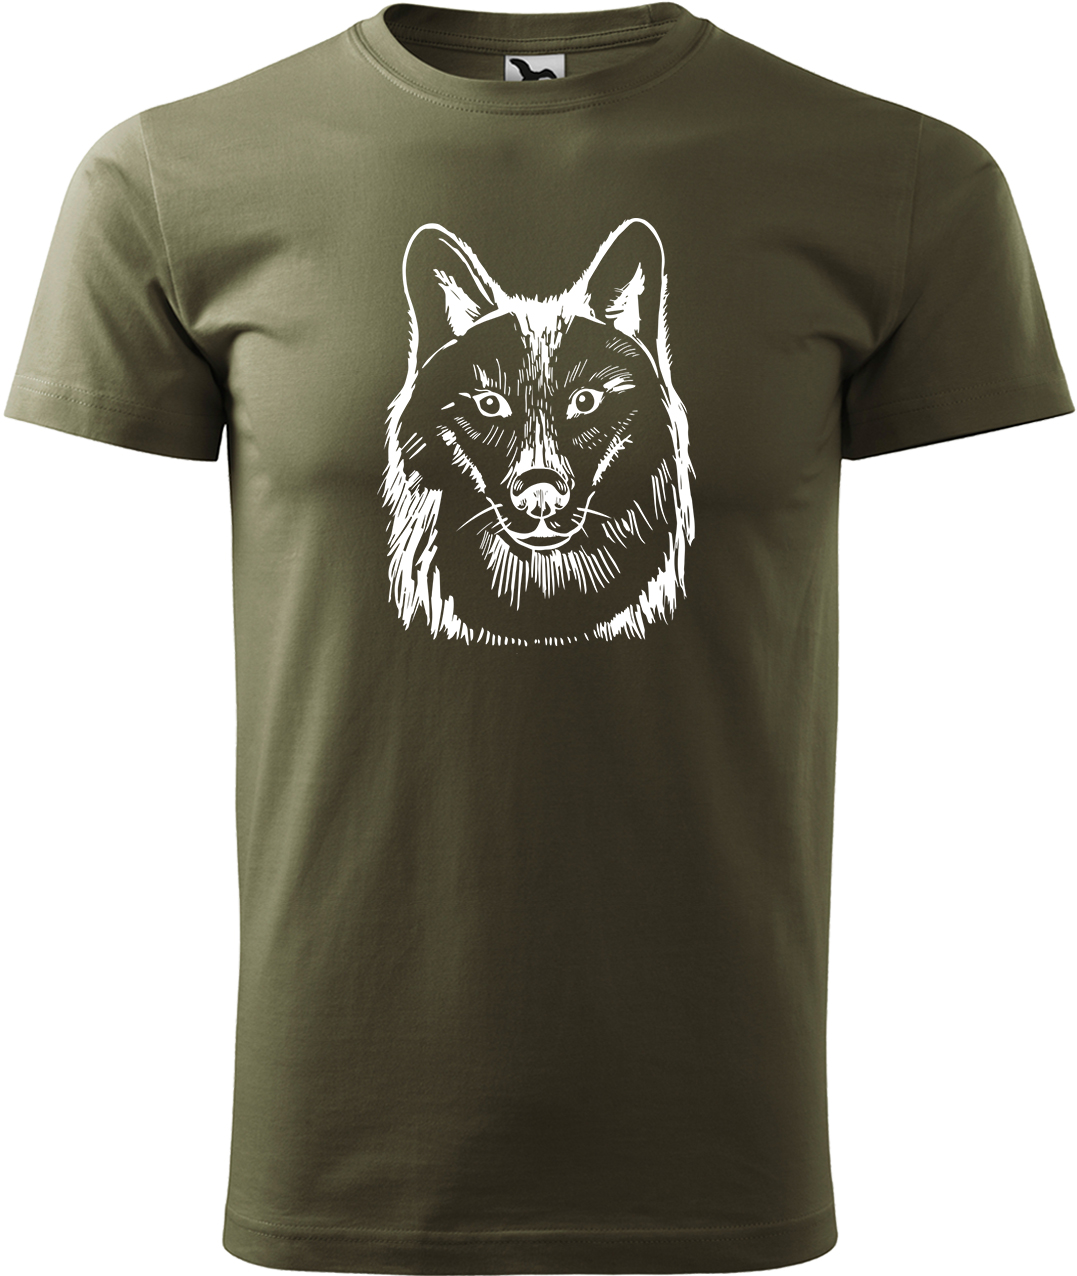 Pánské tričko s vlkem - Kresba vlka Velikost: L, Barva: Military (69), Střih: pánský